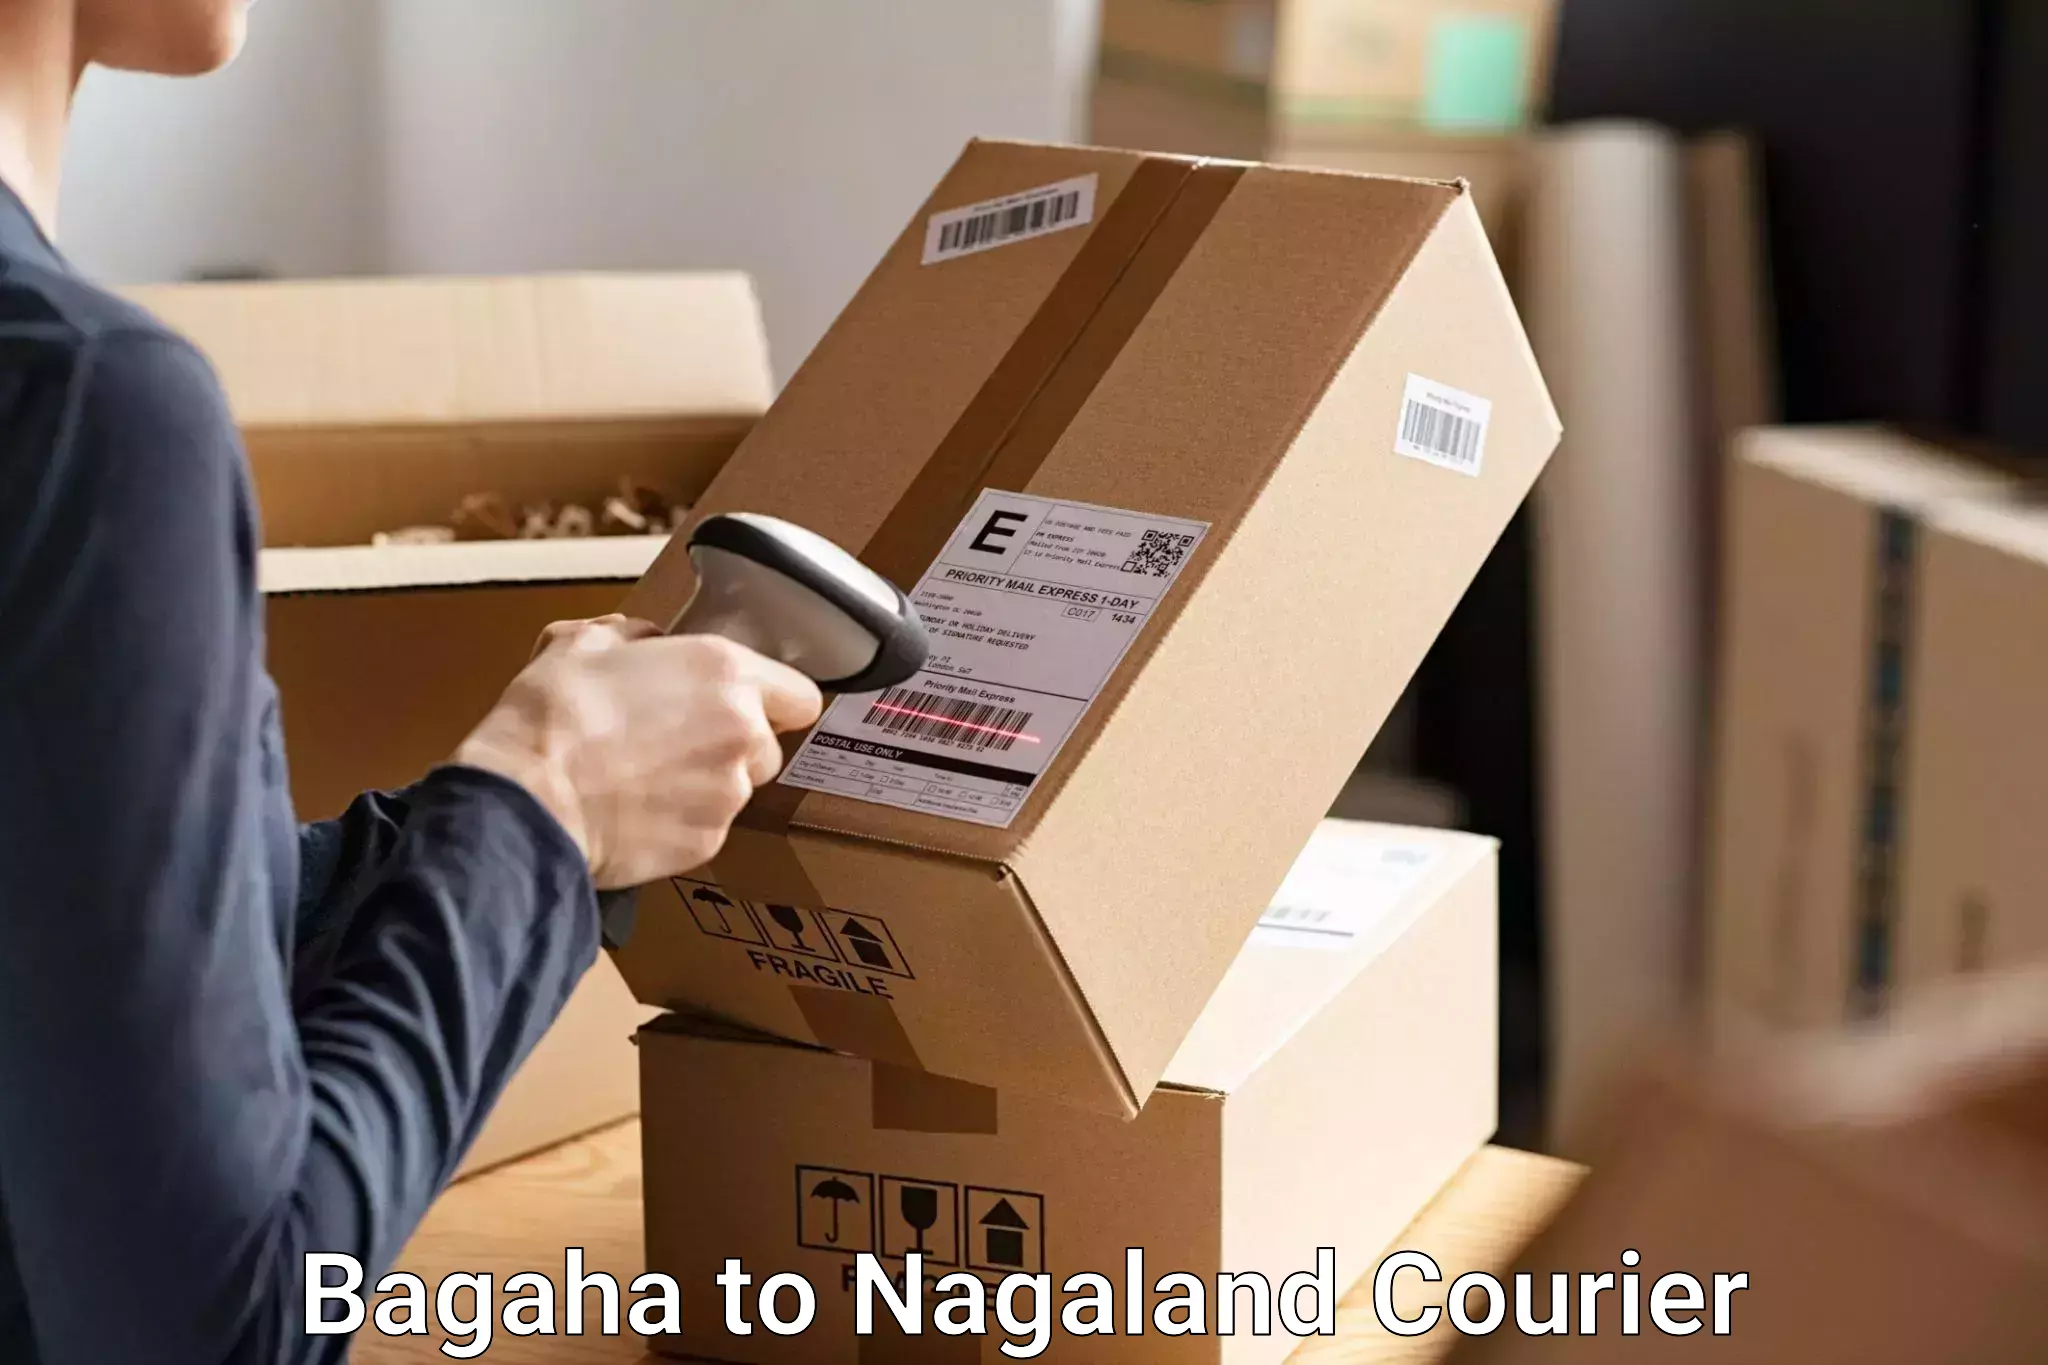 Baggage delivery optimization Bagaha to NIT Nagaland